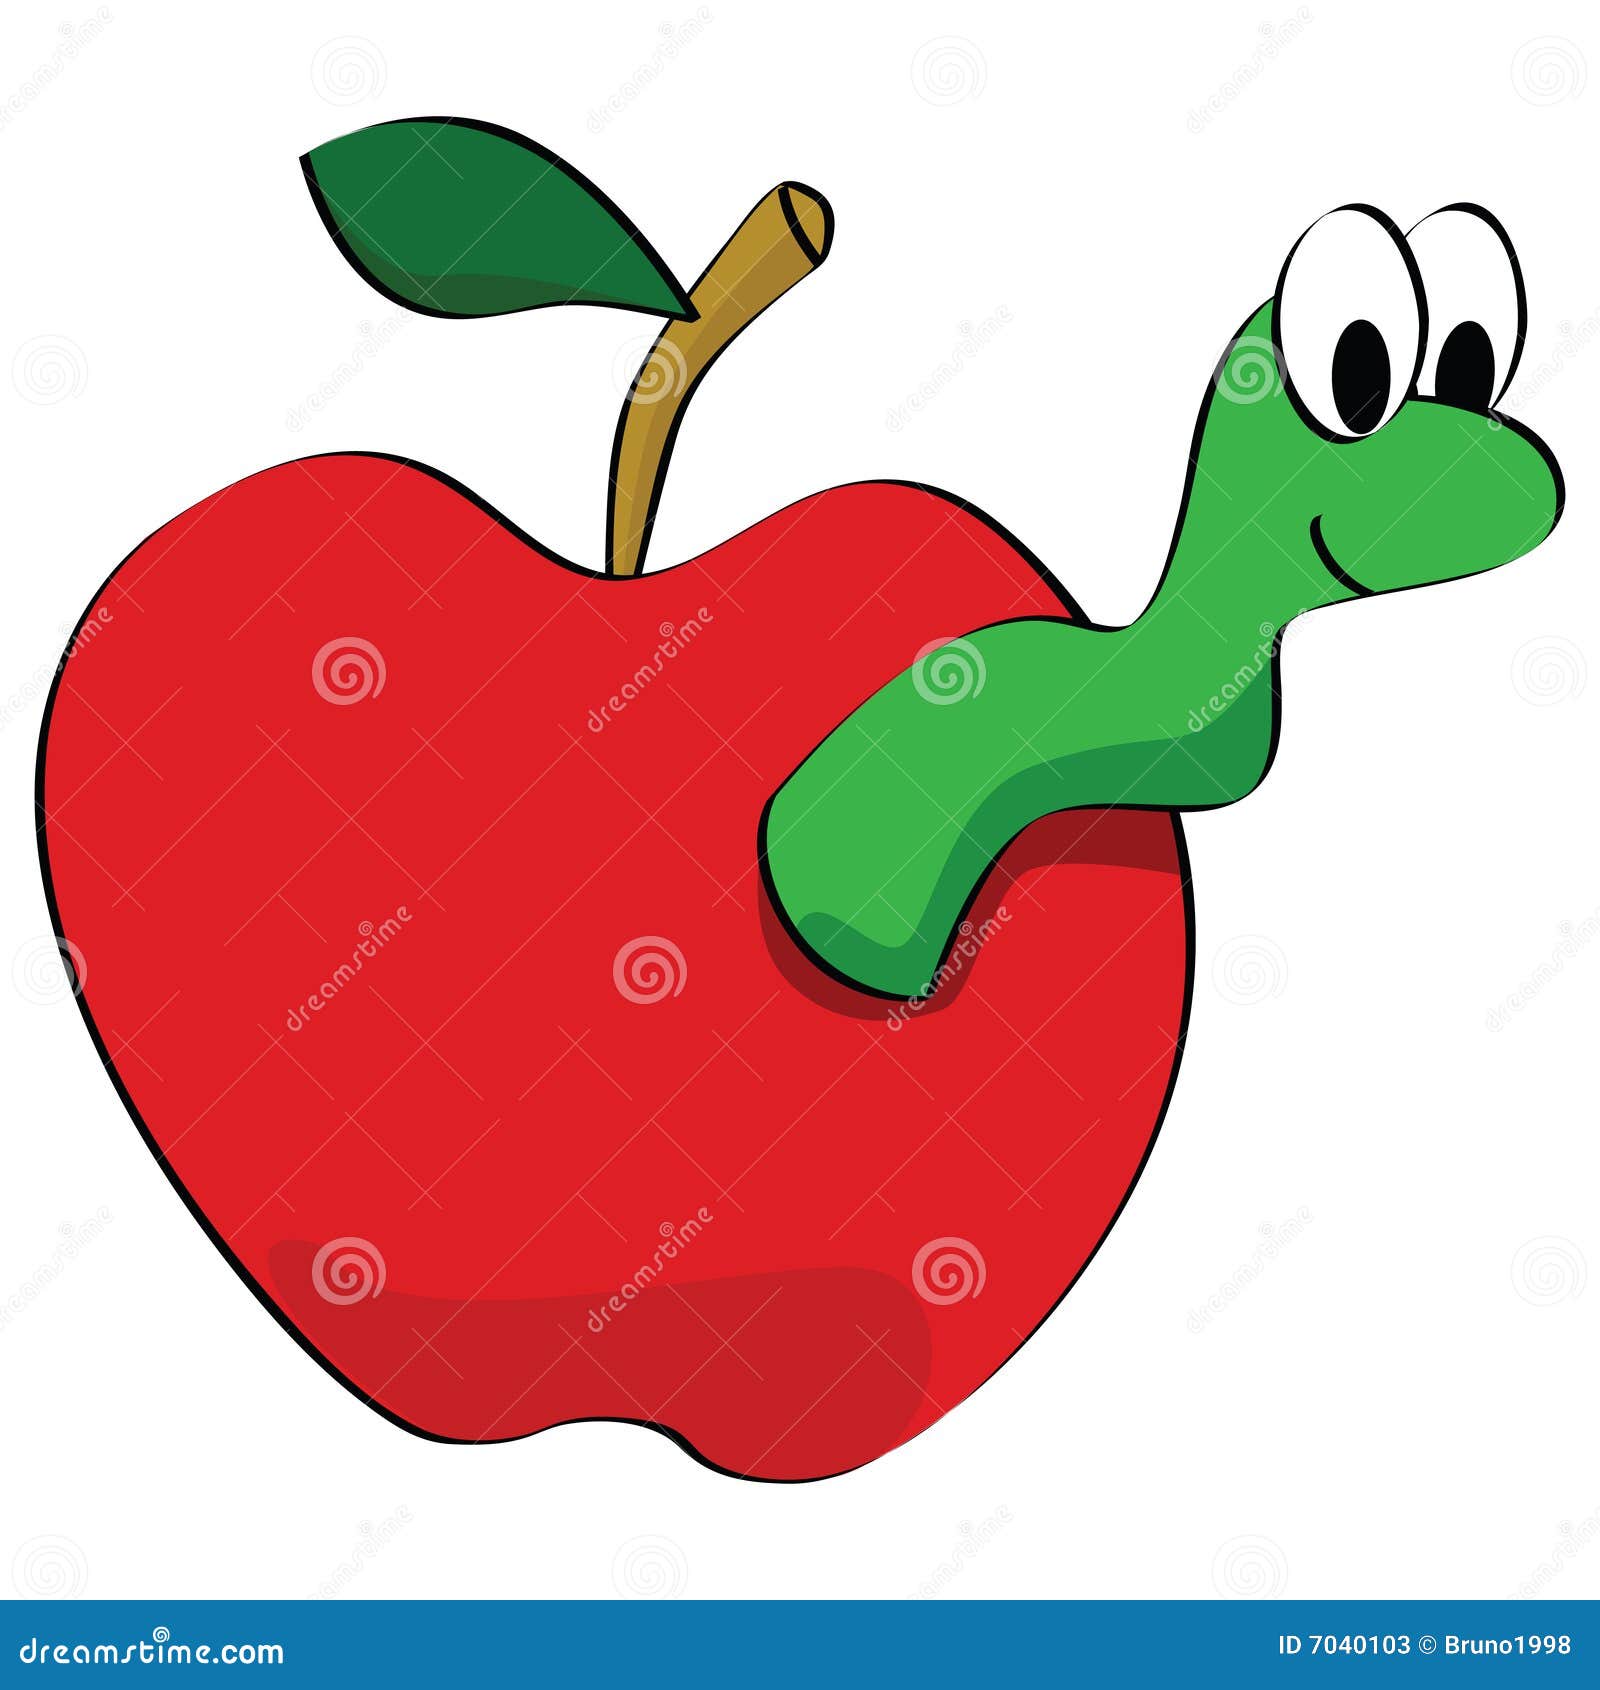 Рисование яблоко с листочком и червячком